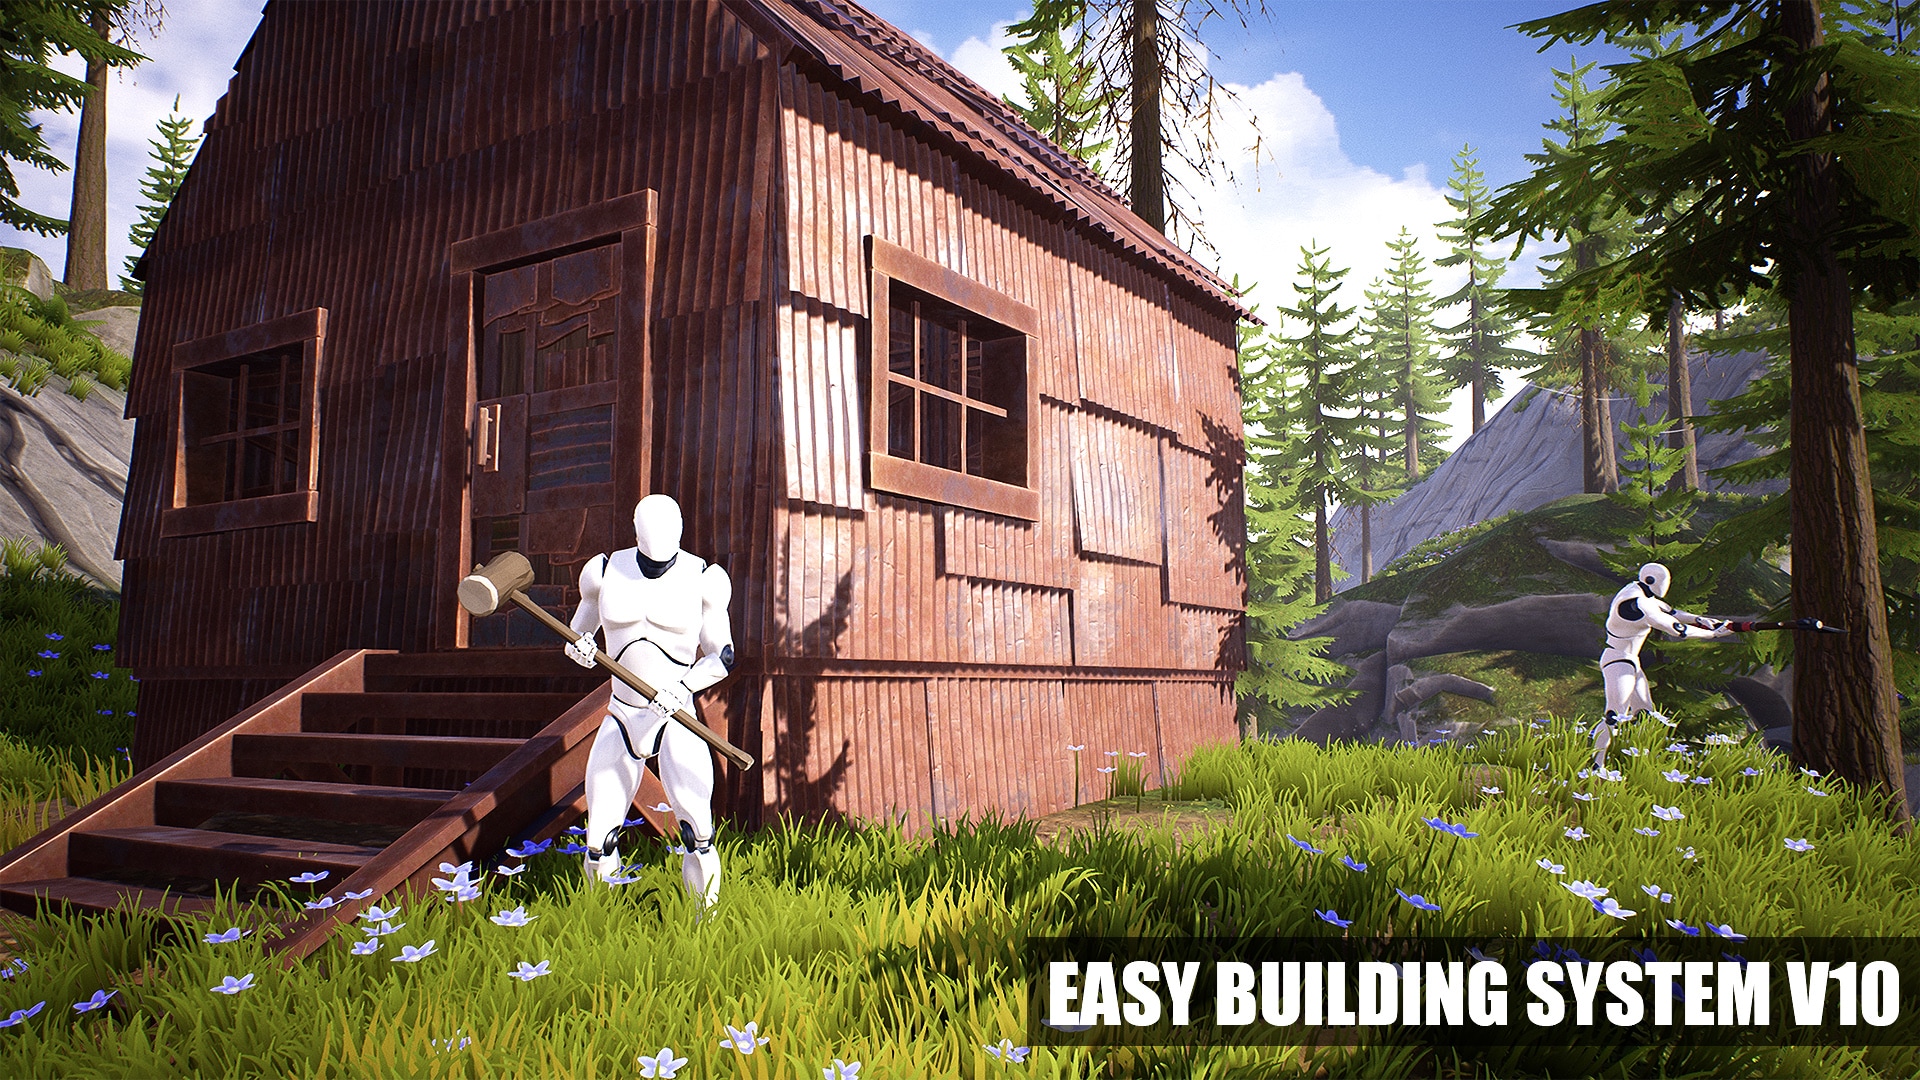 Easy Building System v10 